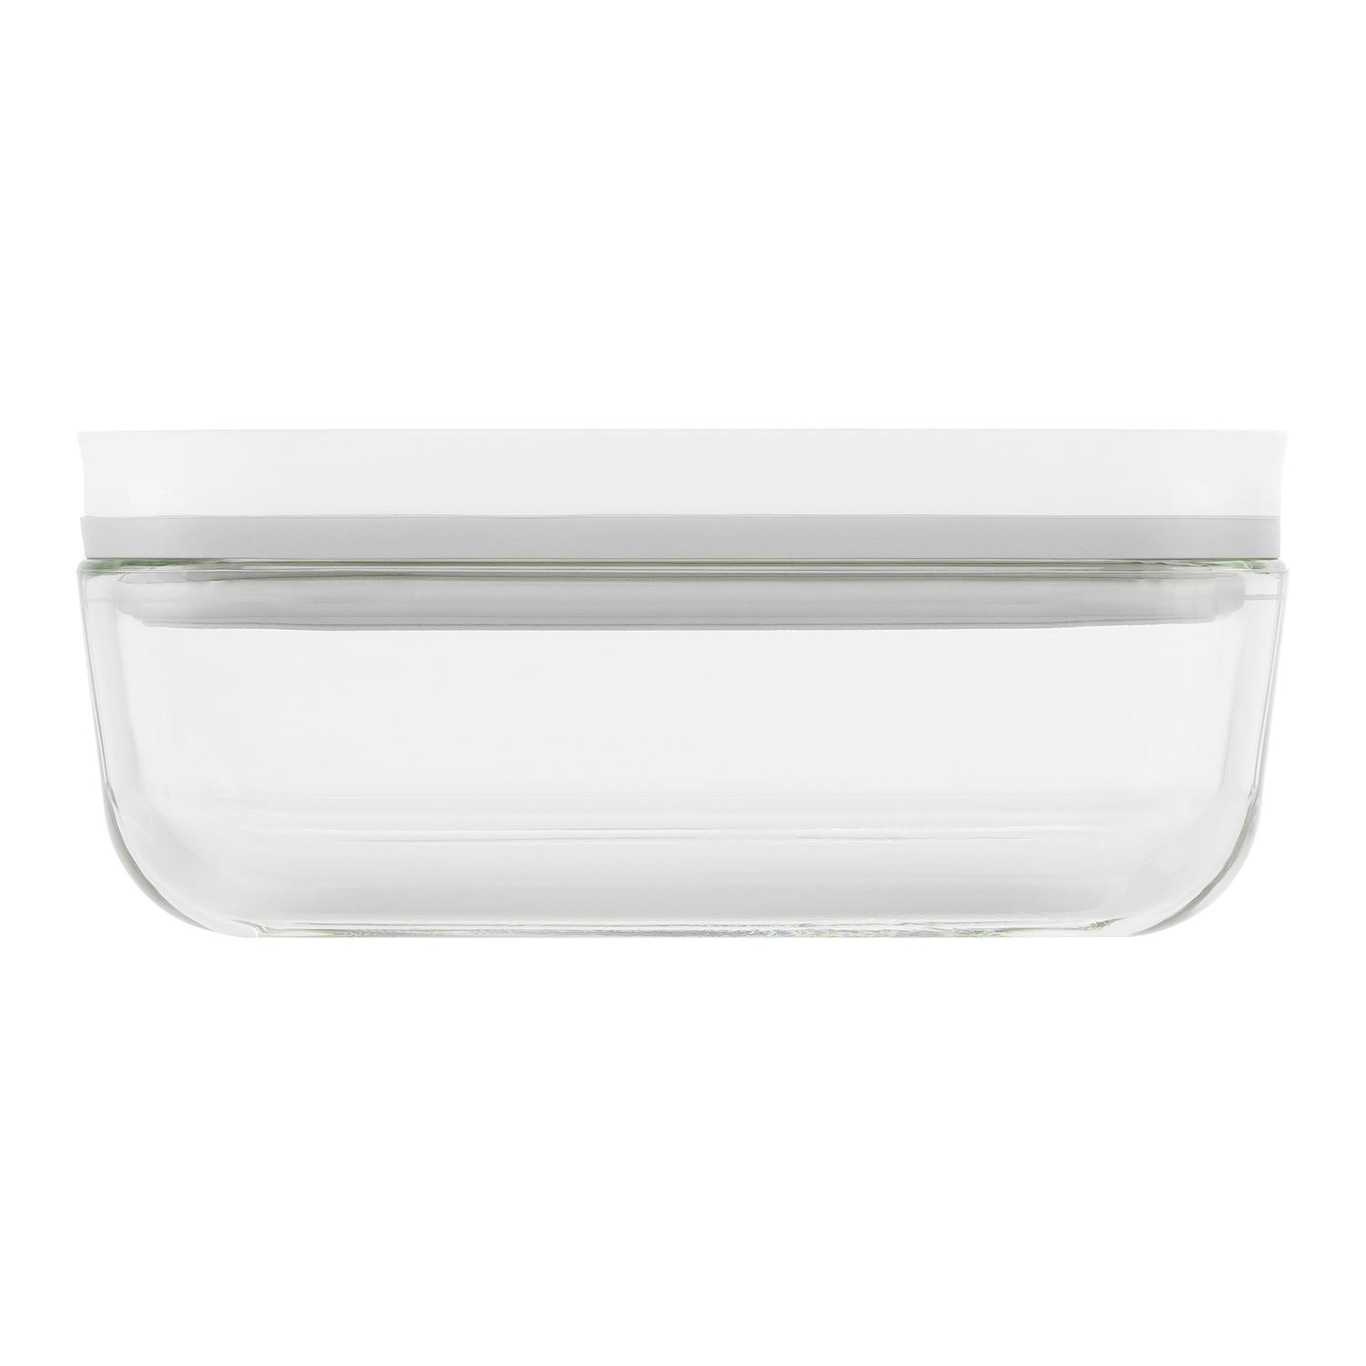 https://royaldesign.co.uk/image/6/zwilling-fresh-save-vacuum-container-borosilicate-glass-3?w=800&quality=80